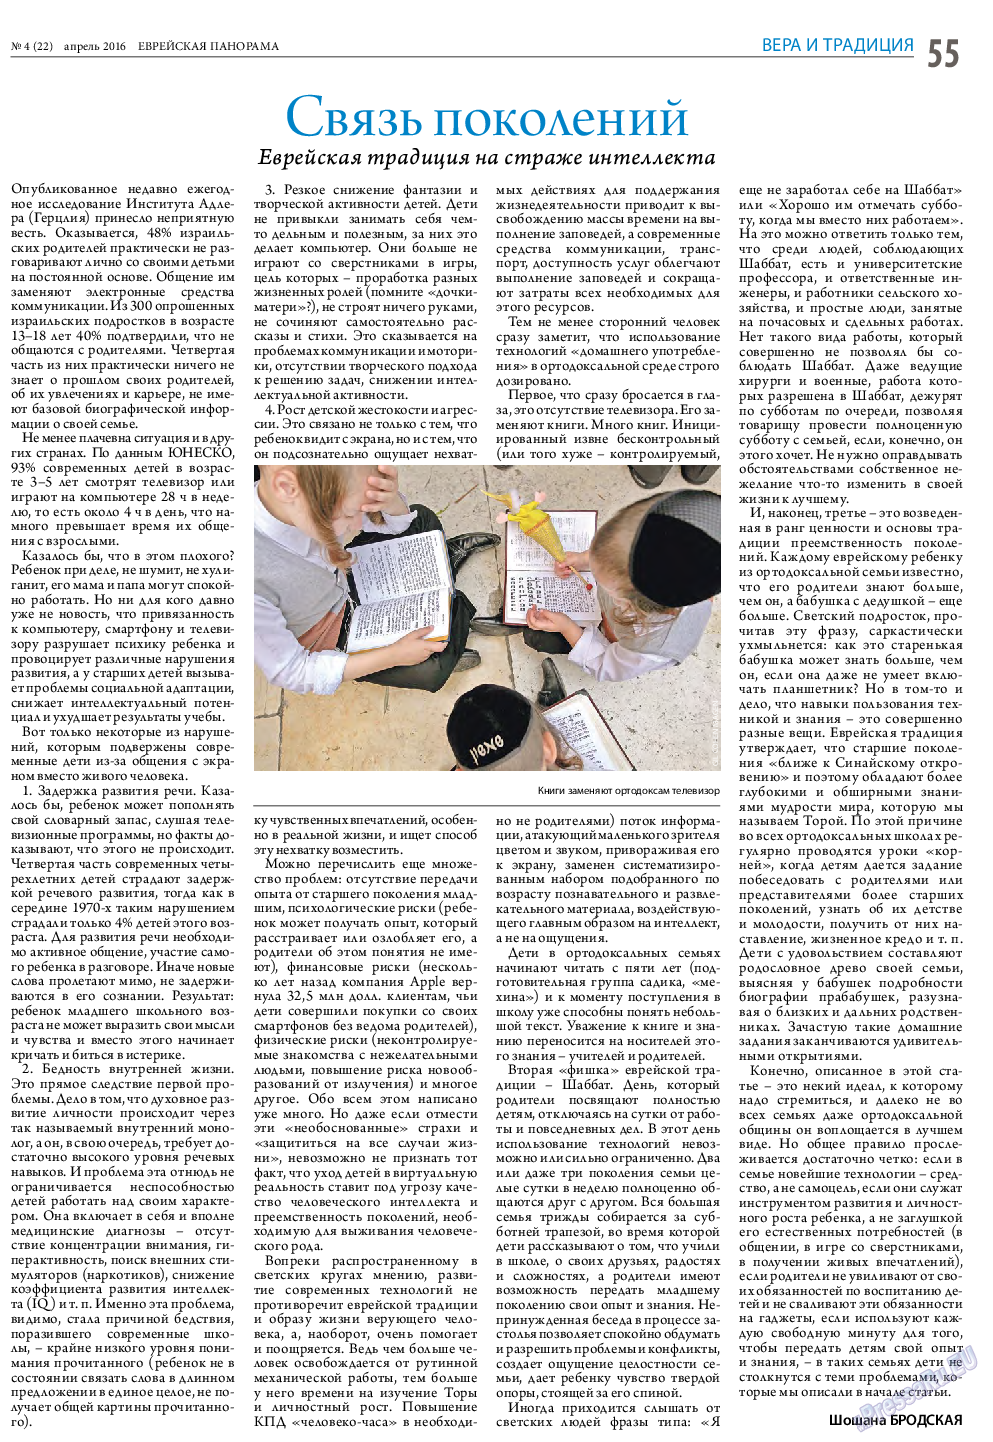 Еврейская панорама (газета). 2016 год, номер 4, стр. 55